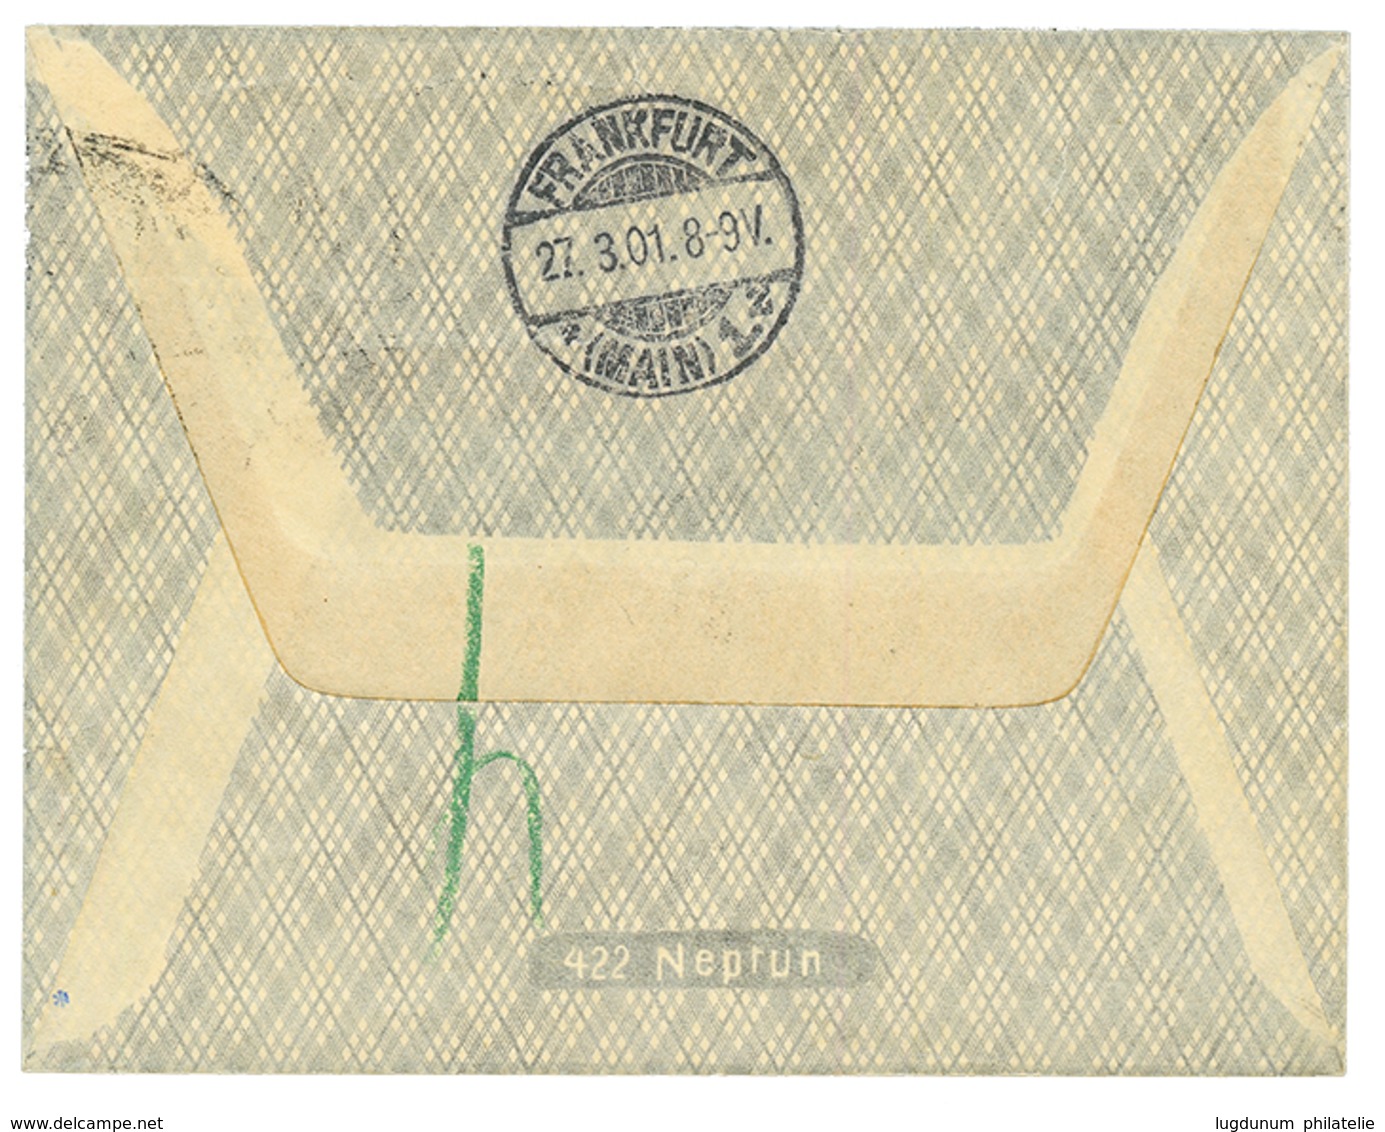 VORLAUFER : 1901 10pf + 20pf Canc. YAP KAROLINEN On REGISTERED Envelope To GERMANY. Vvf. - Islas Carolinas